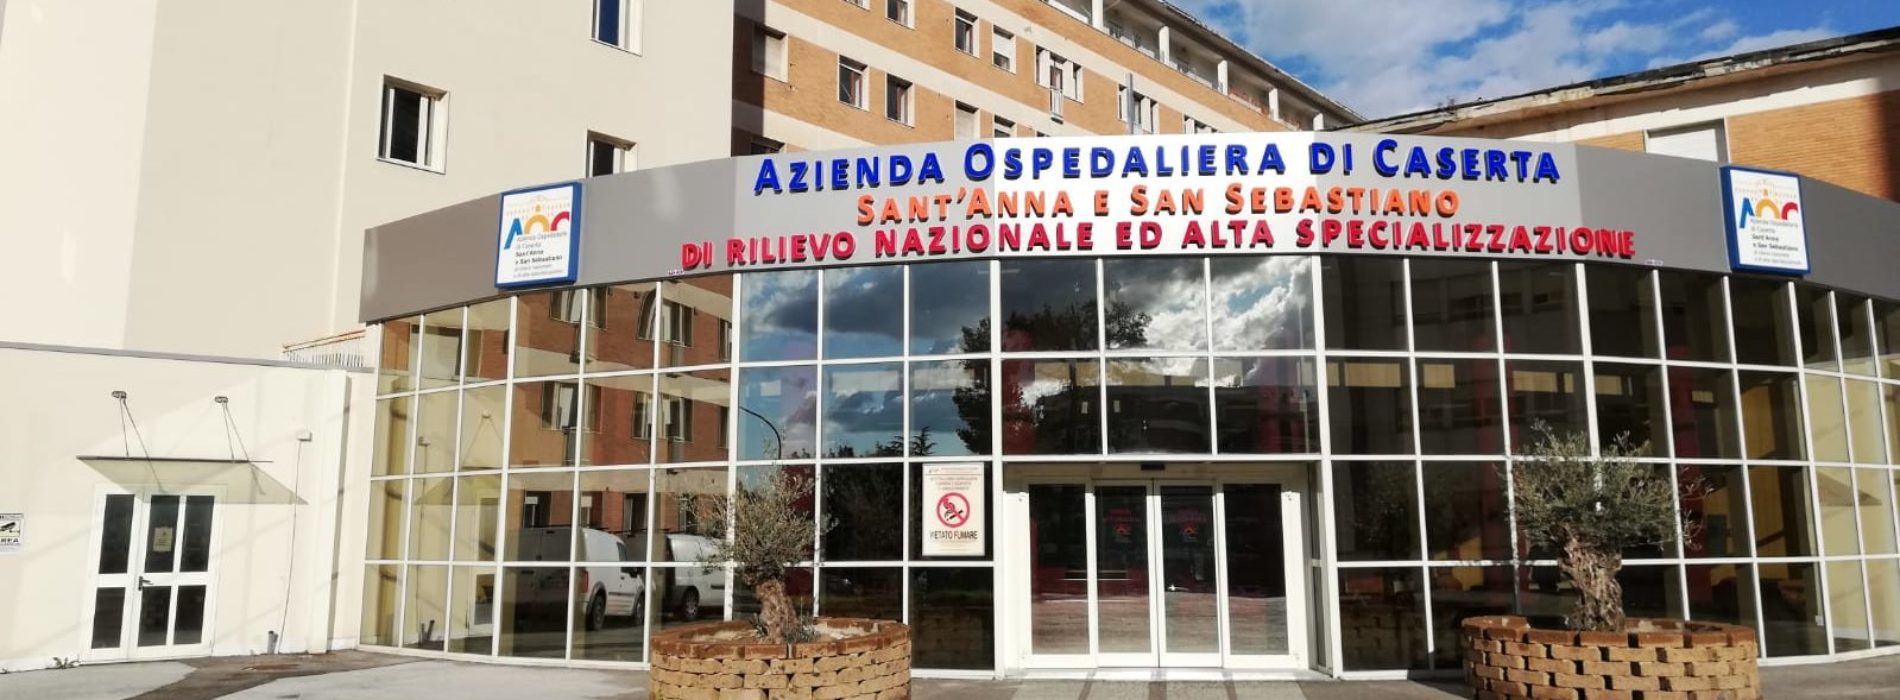 Ospedale Caserta, tecnica percutanea d’urgenza su aneurisma